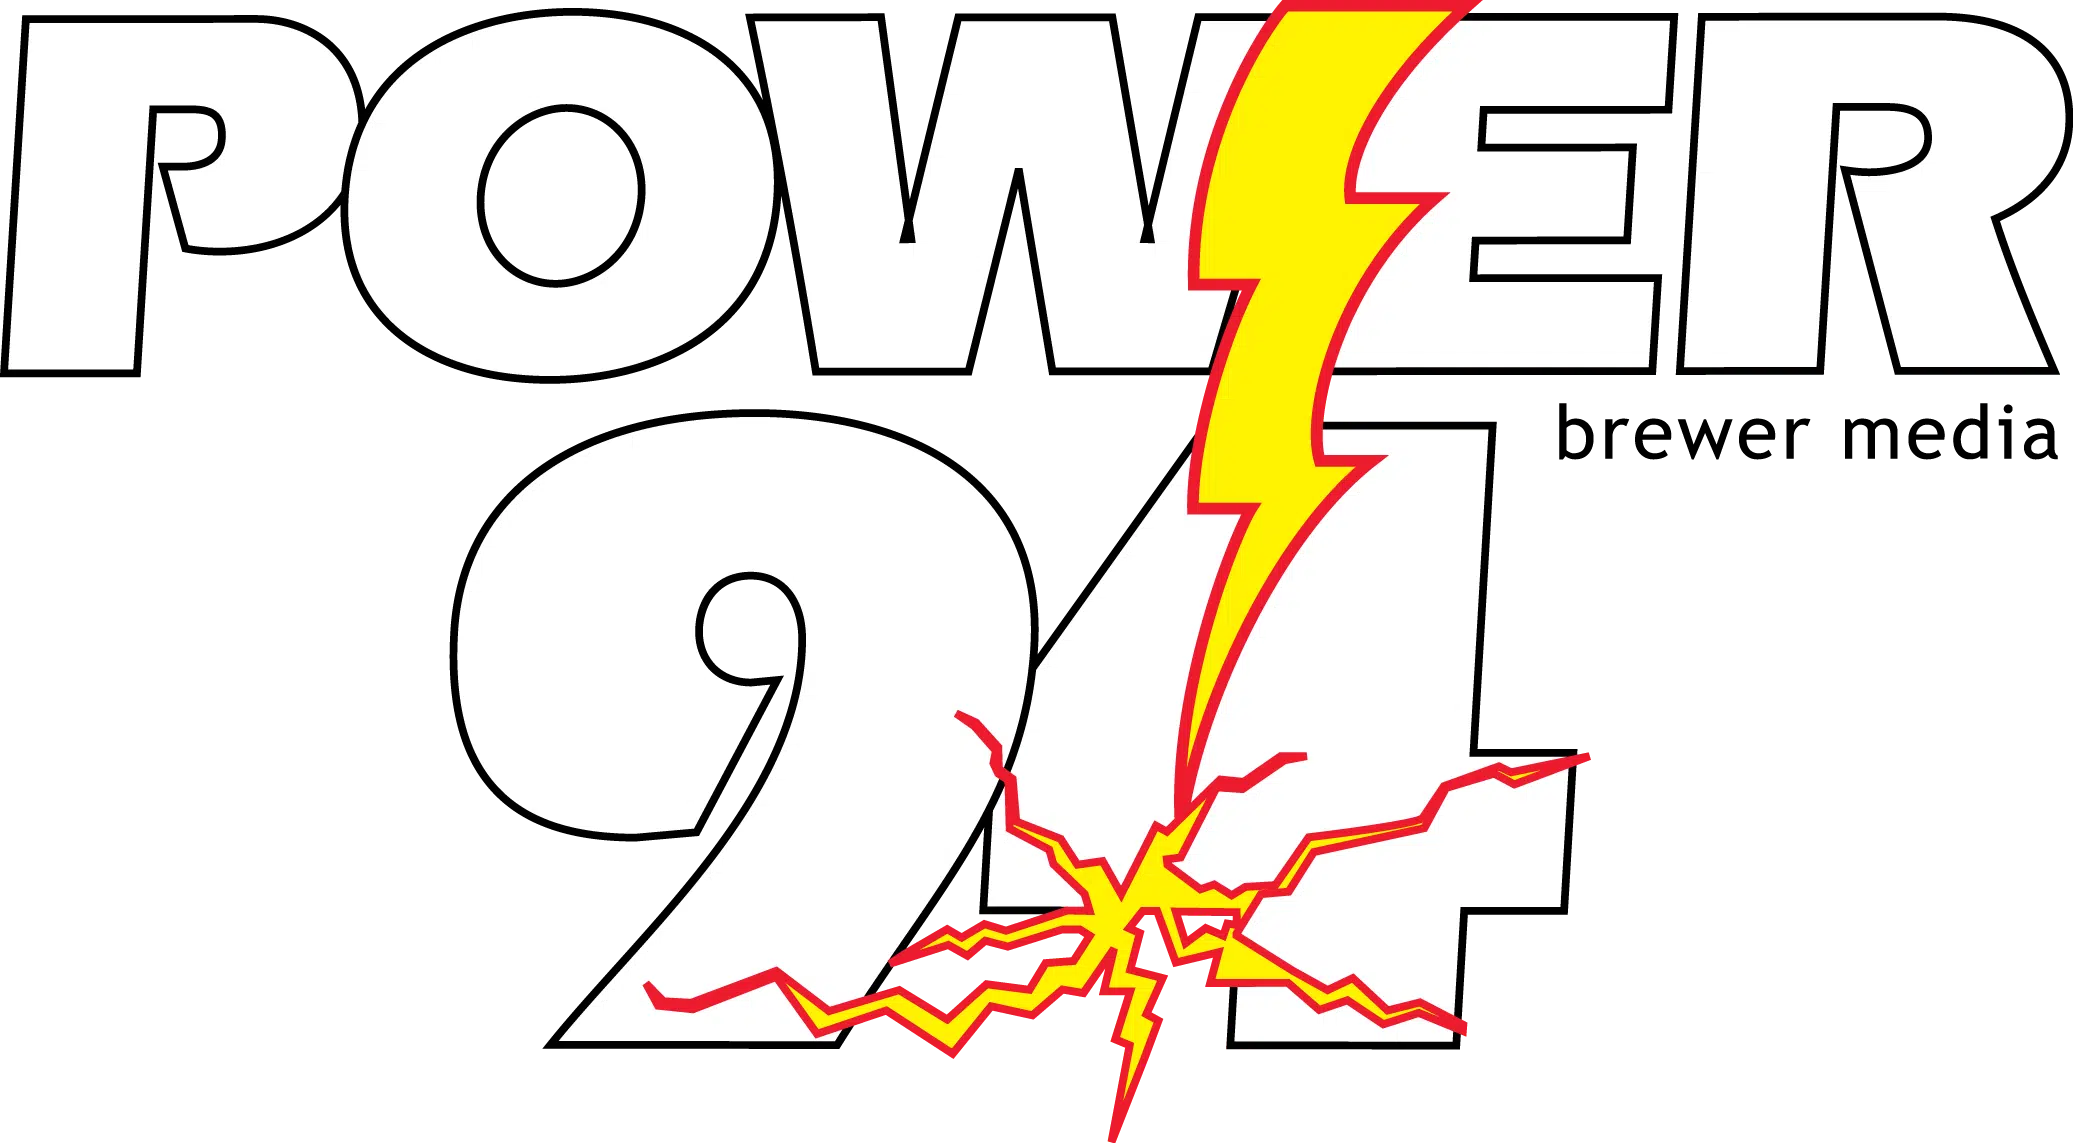 Power 94.3 - WJTT FM